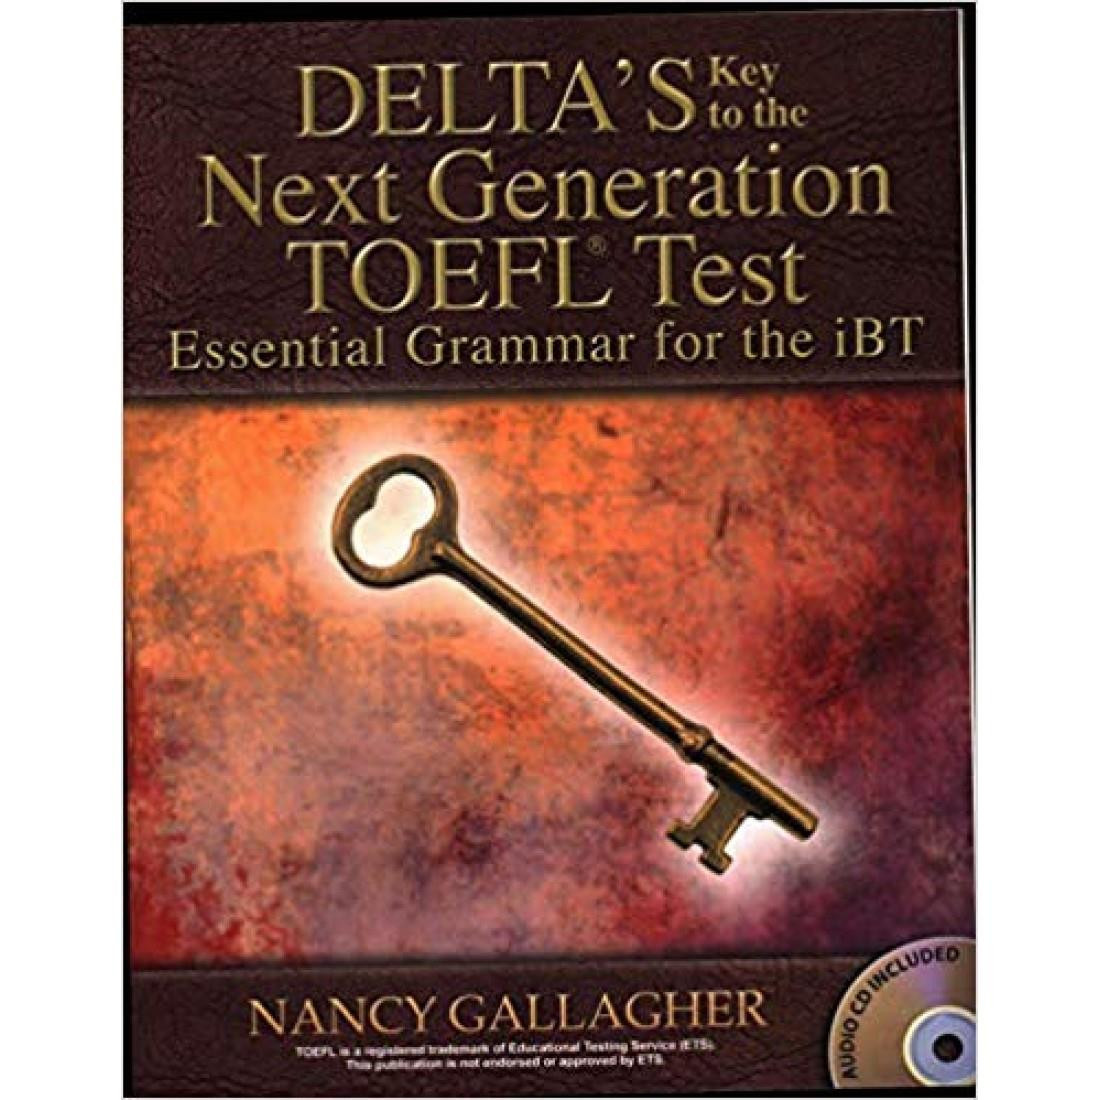 DELTAS KEY TO THE NEXT GENERATION TOEFL TEST ESSENTIAL GRAMMAR FOR IBT